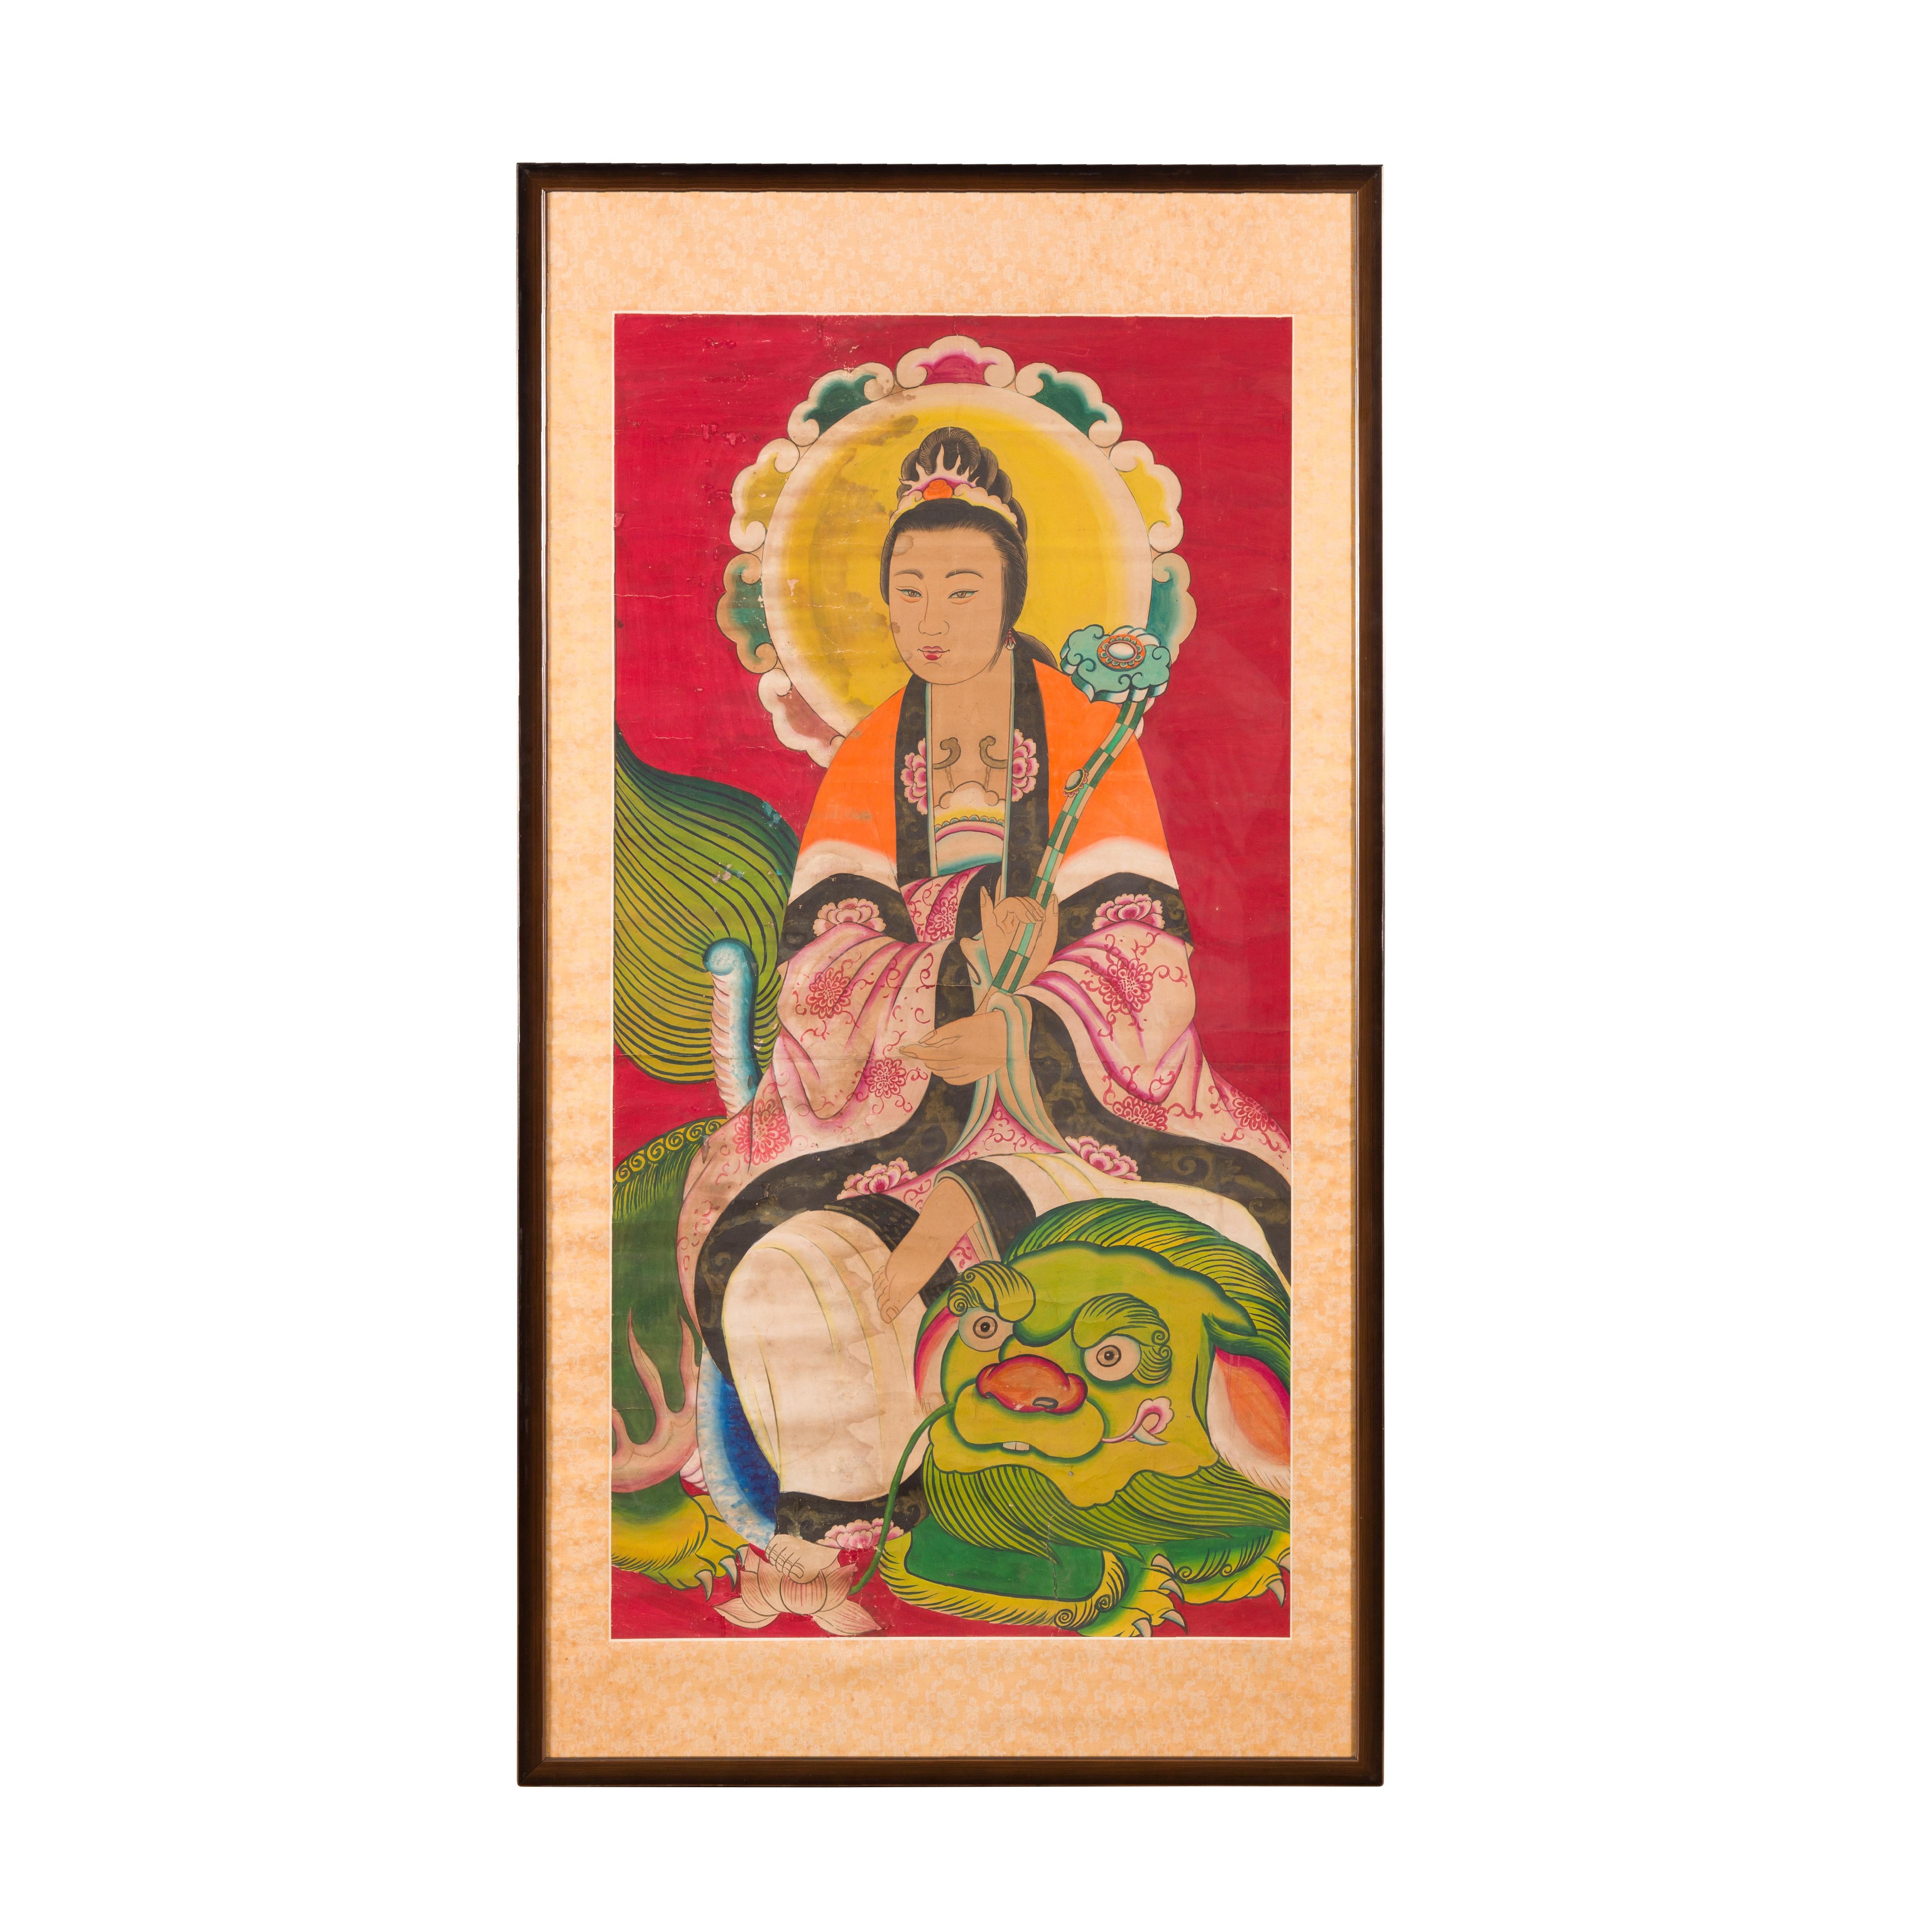 Une peinture indienne ancienne du XIXe siècle représentant Guanyin, le bodhisattva de la compassion, assis sur un dragon. Créé en Inde au XIXe siècle, ce grand tableau représente Guanyin, le bodhisattva de la compassion, assis sur la tête d'un